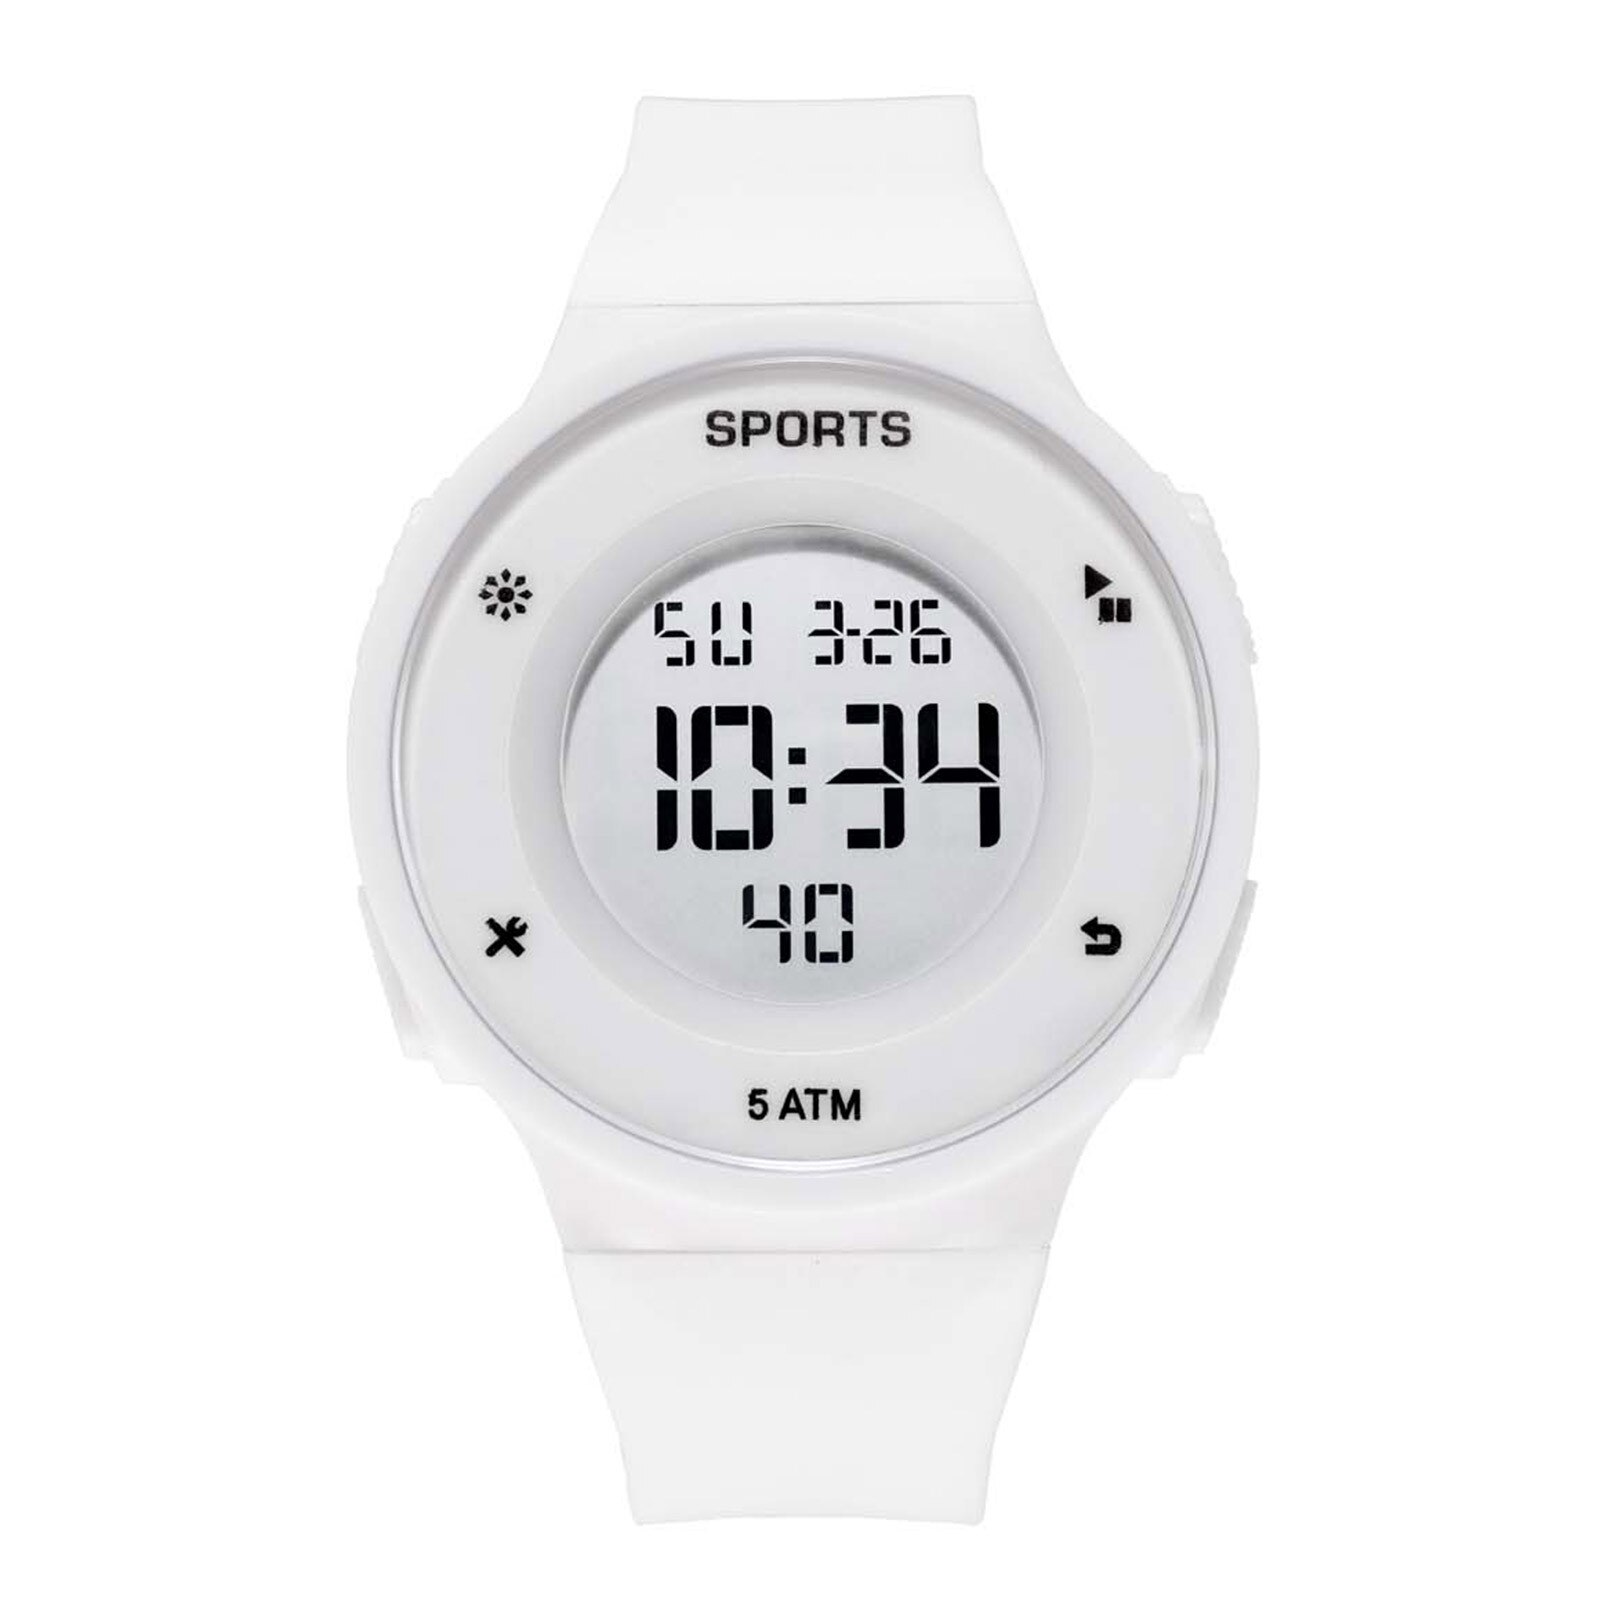 Luxe Heren Horloge Digitale Led Datum Sport Mannen Multifunctionele Waterdichte Outdoor Elektronische Mannen Digitale Horloges Reloj Hombre: White